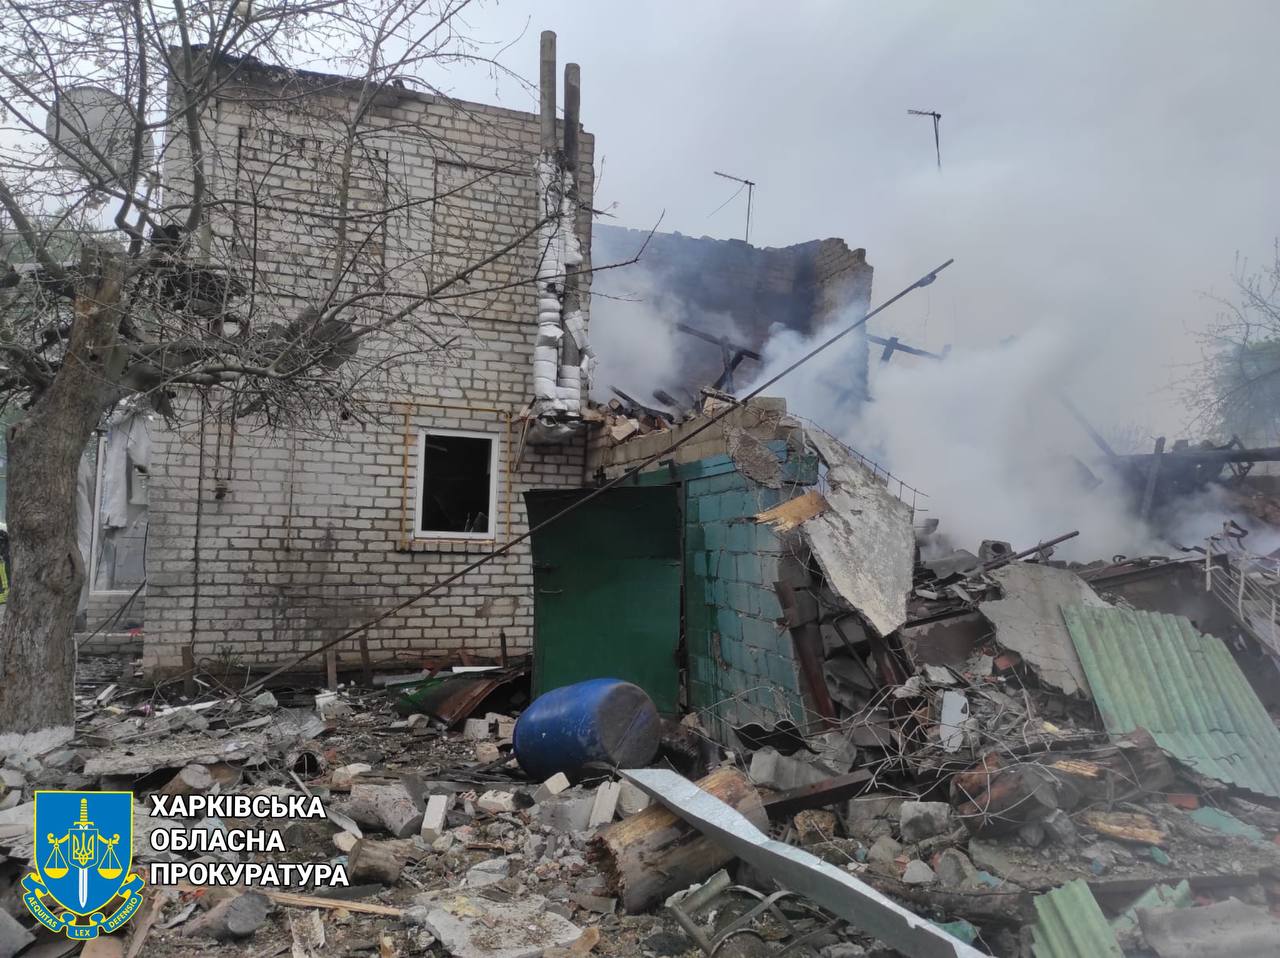 На Харківський район скинули шість авіаційних боєприпасів: пошкоджені будинки, навчальний заклад, енергооб’єкт